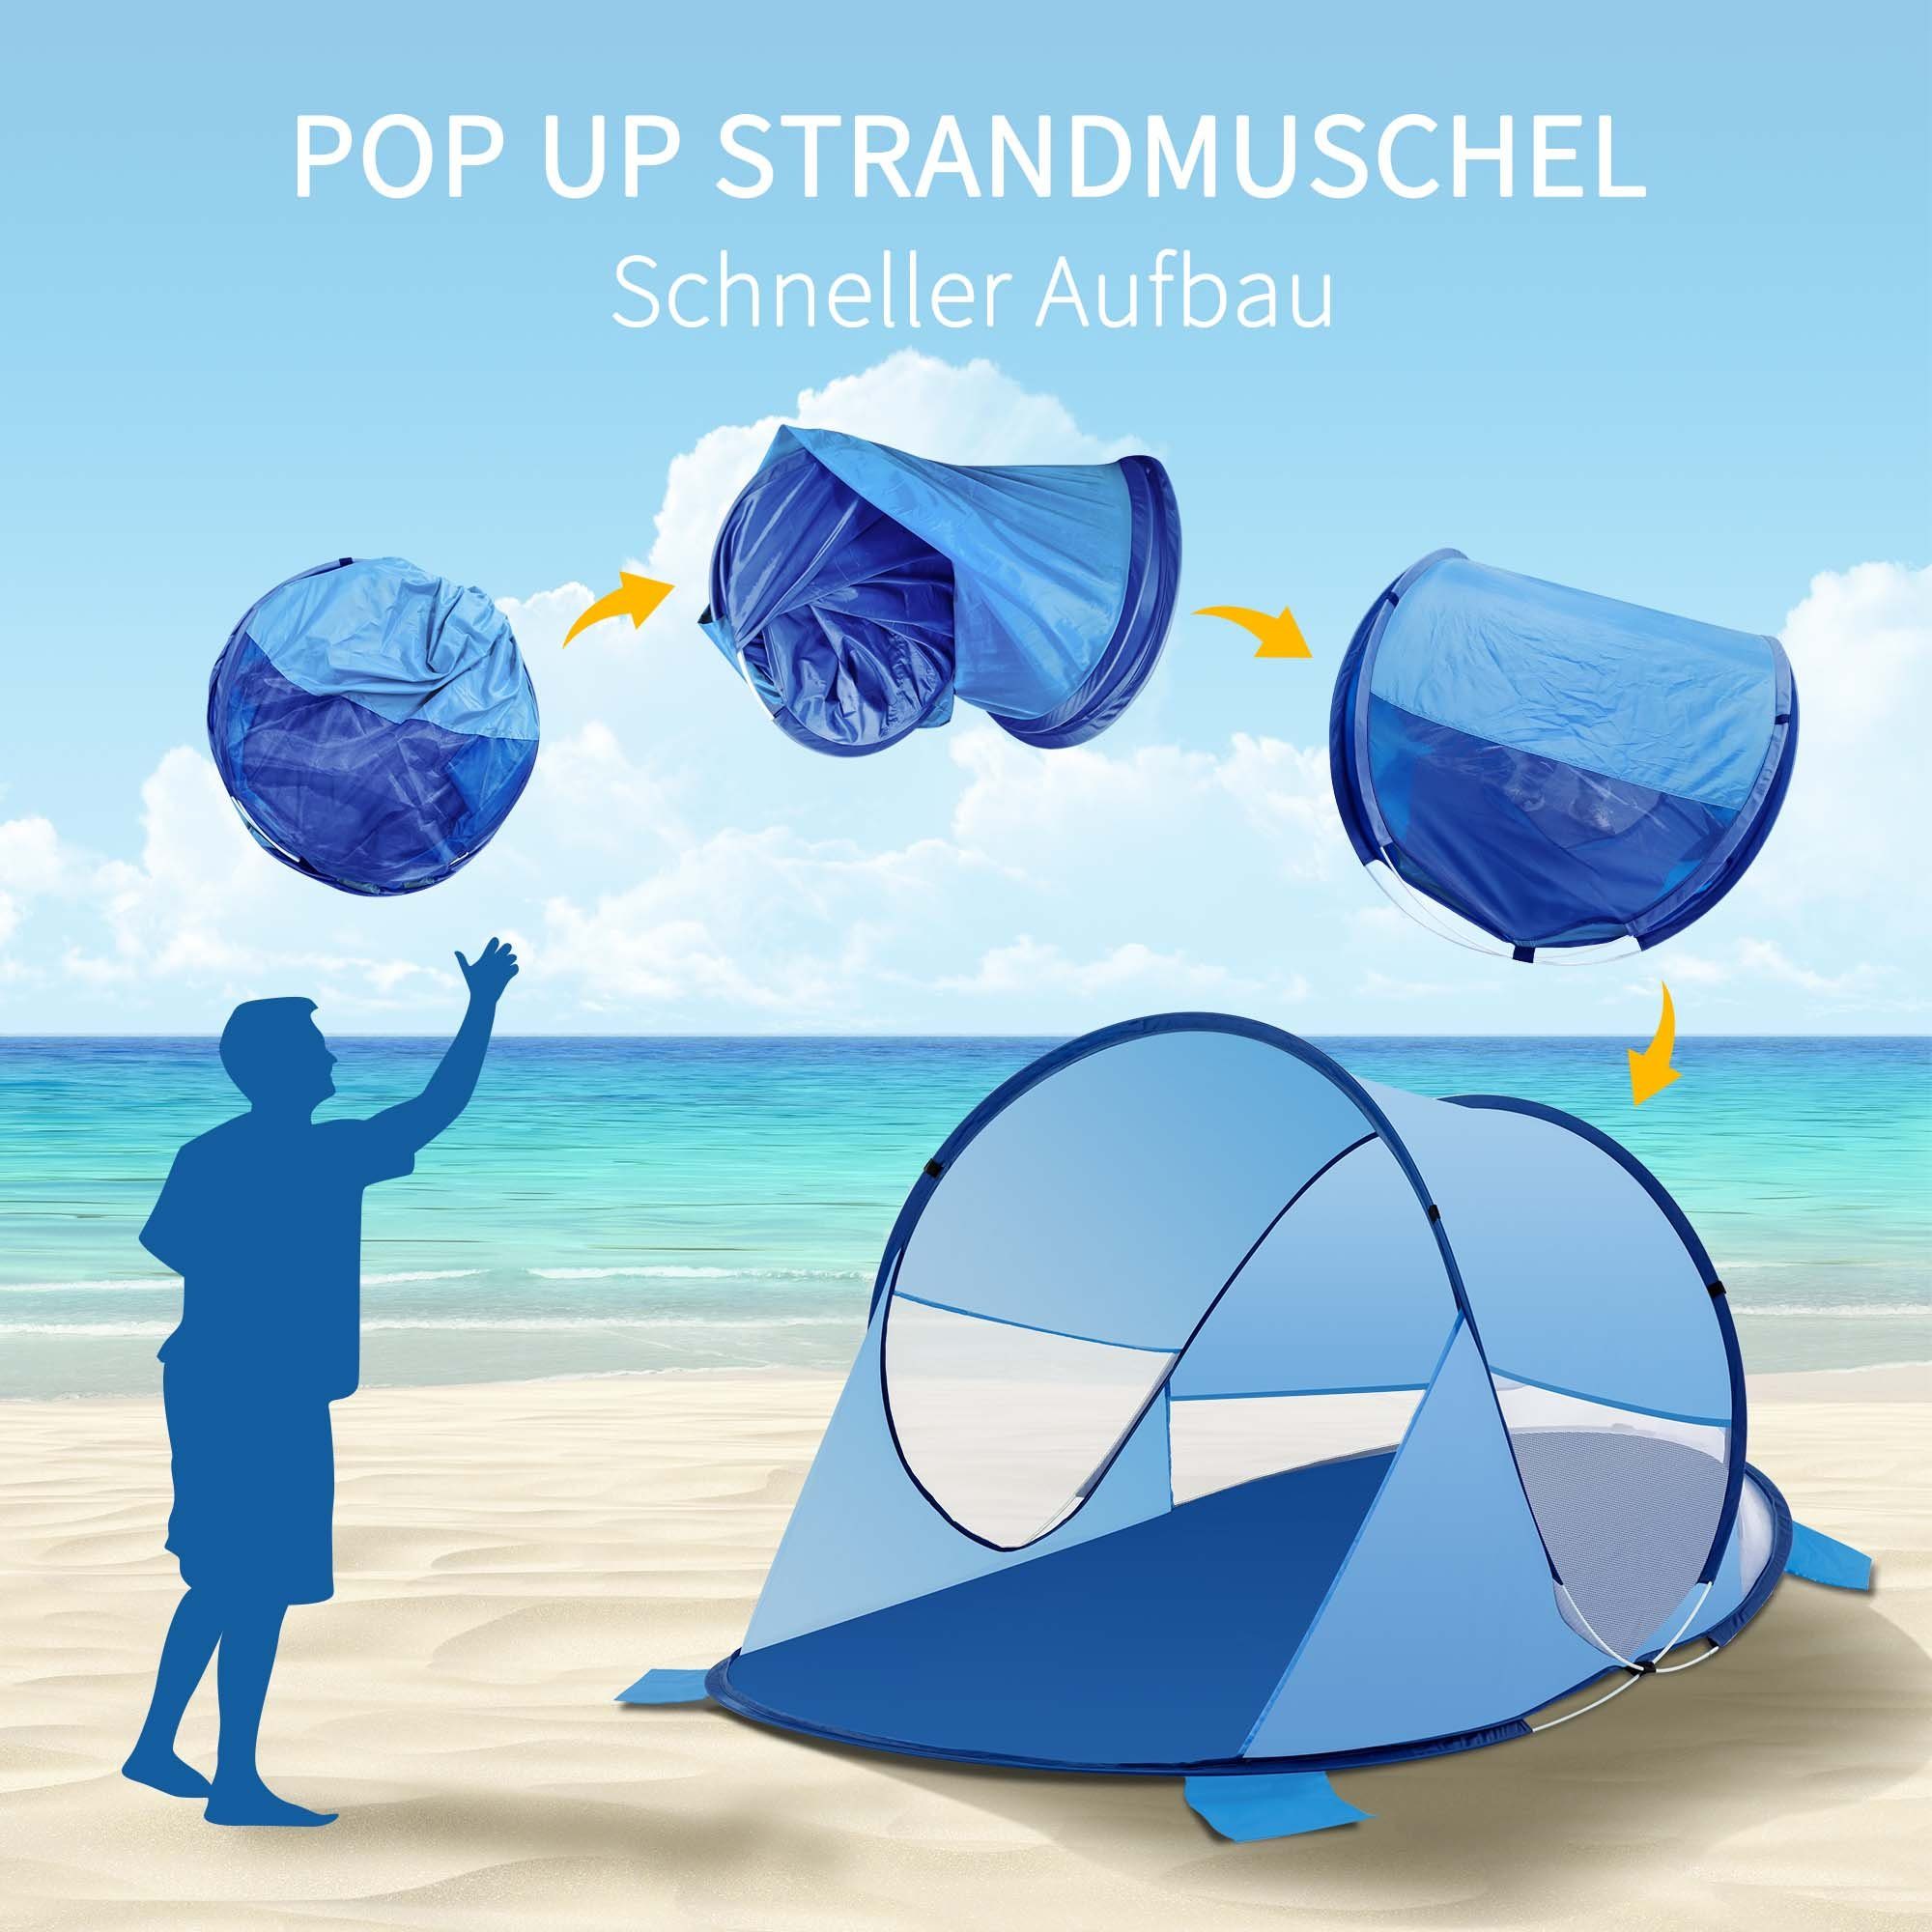 Zelt und D-Blau+H-Blau Duhome Strandmuschel, Wetter- Polyester Pop Up Sichtschutz Strandmuschel Strandzelt